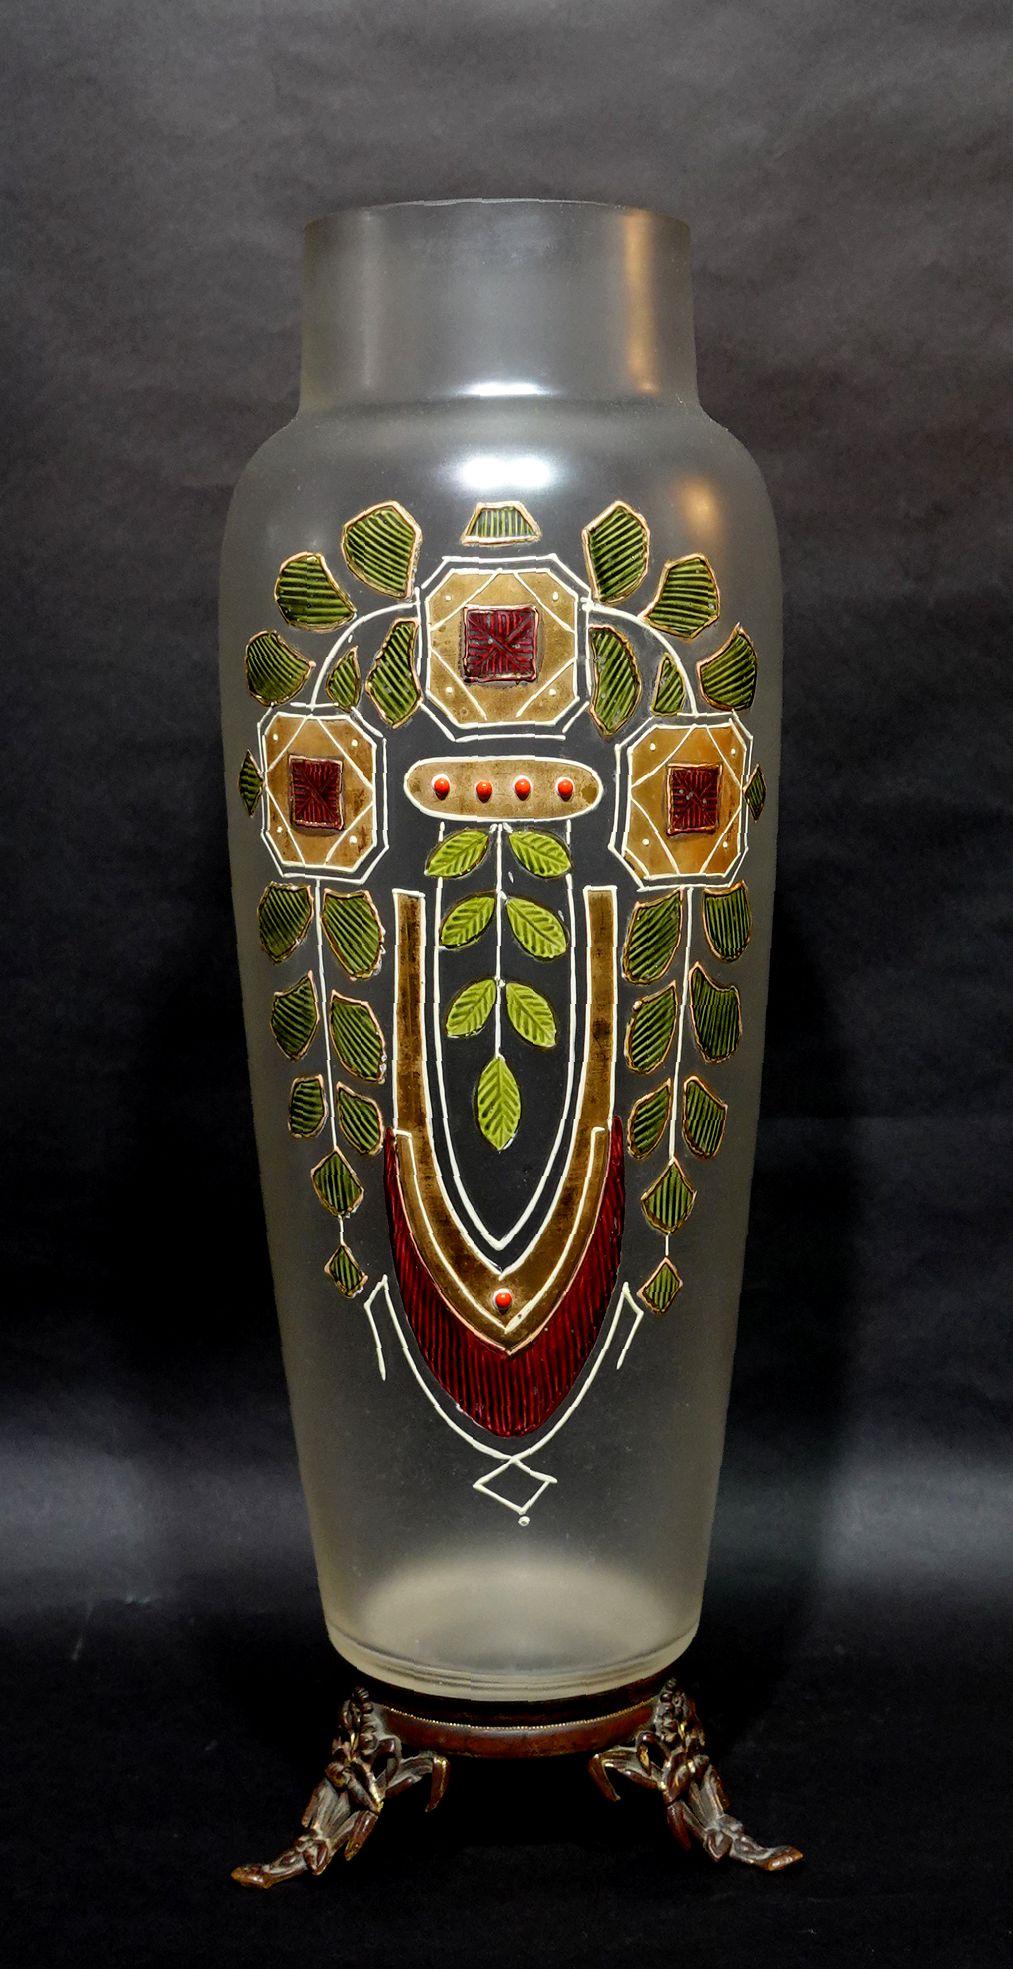 Un grand vase en verre de style Art nouveau avec un corps givré émaillé et doré formant une forme très élégante avec des lignes courbes subtiles. Le vase repose sur une base en bronze.